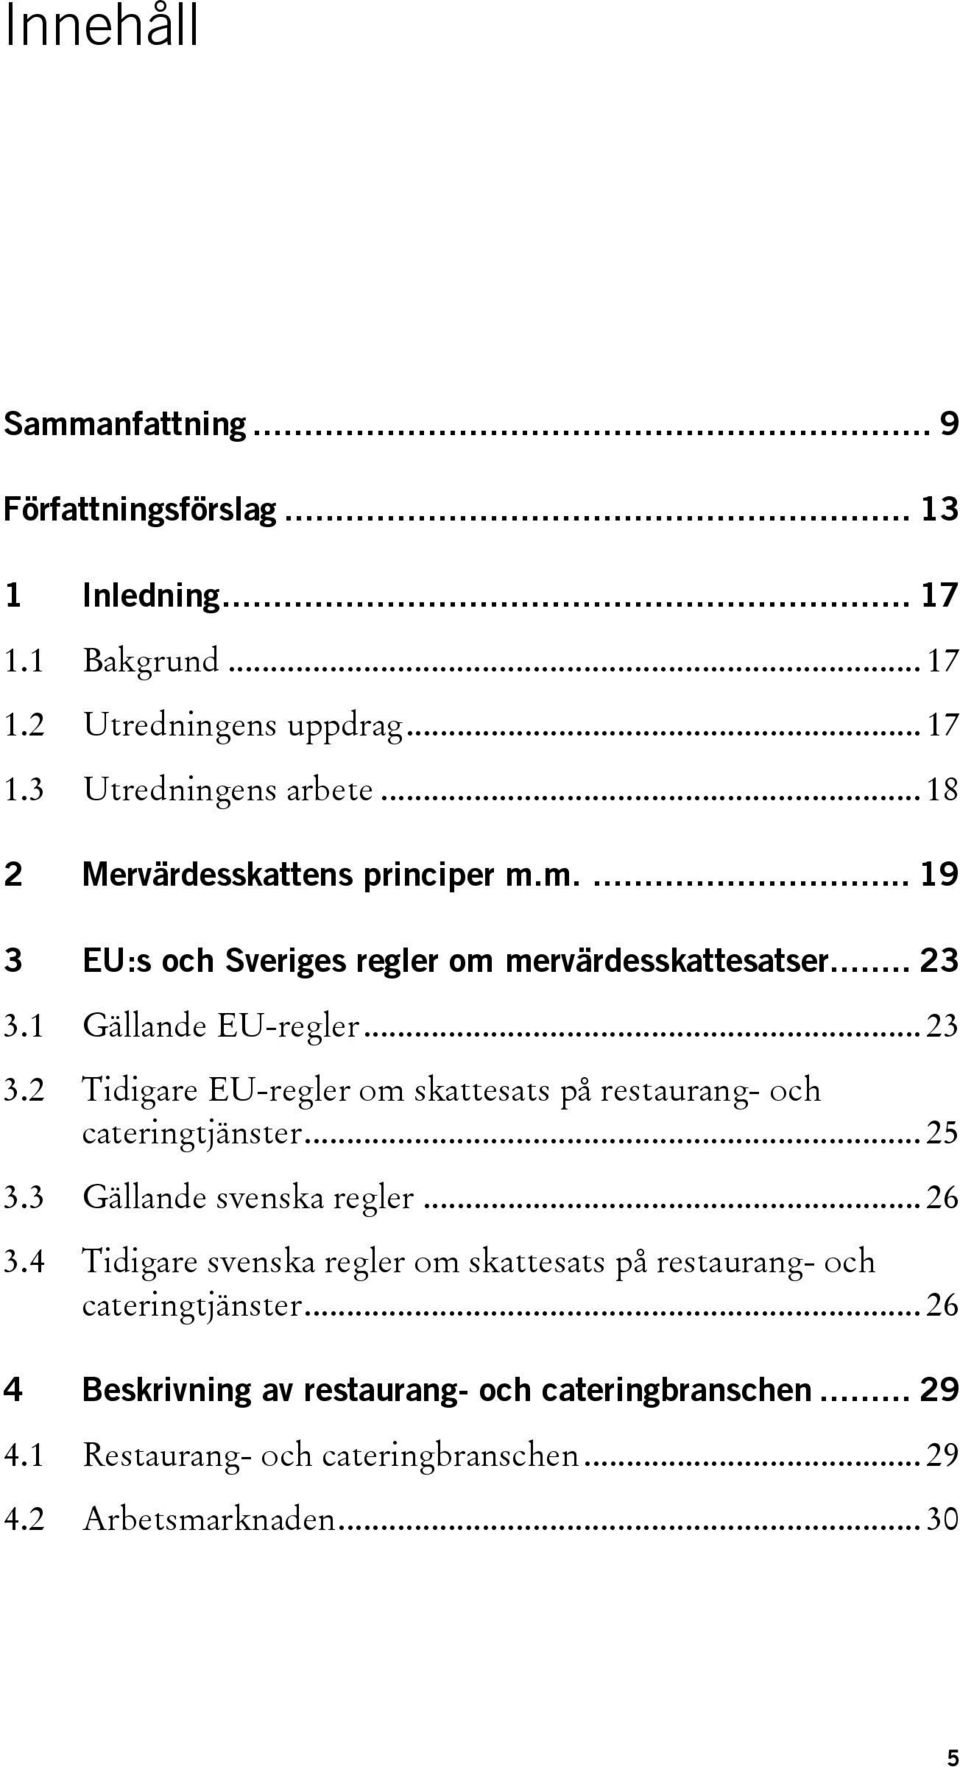 1 Gällande EU-regler... 23 3.2 Tidigare EU-regler om skattesats på restaurang- och cateringtjänster... 25 3.3 Gällande svenska regler... 26 3.